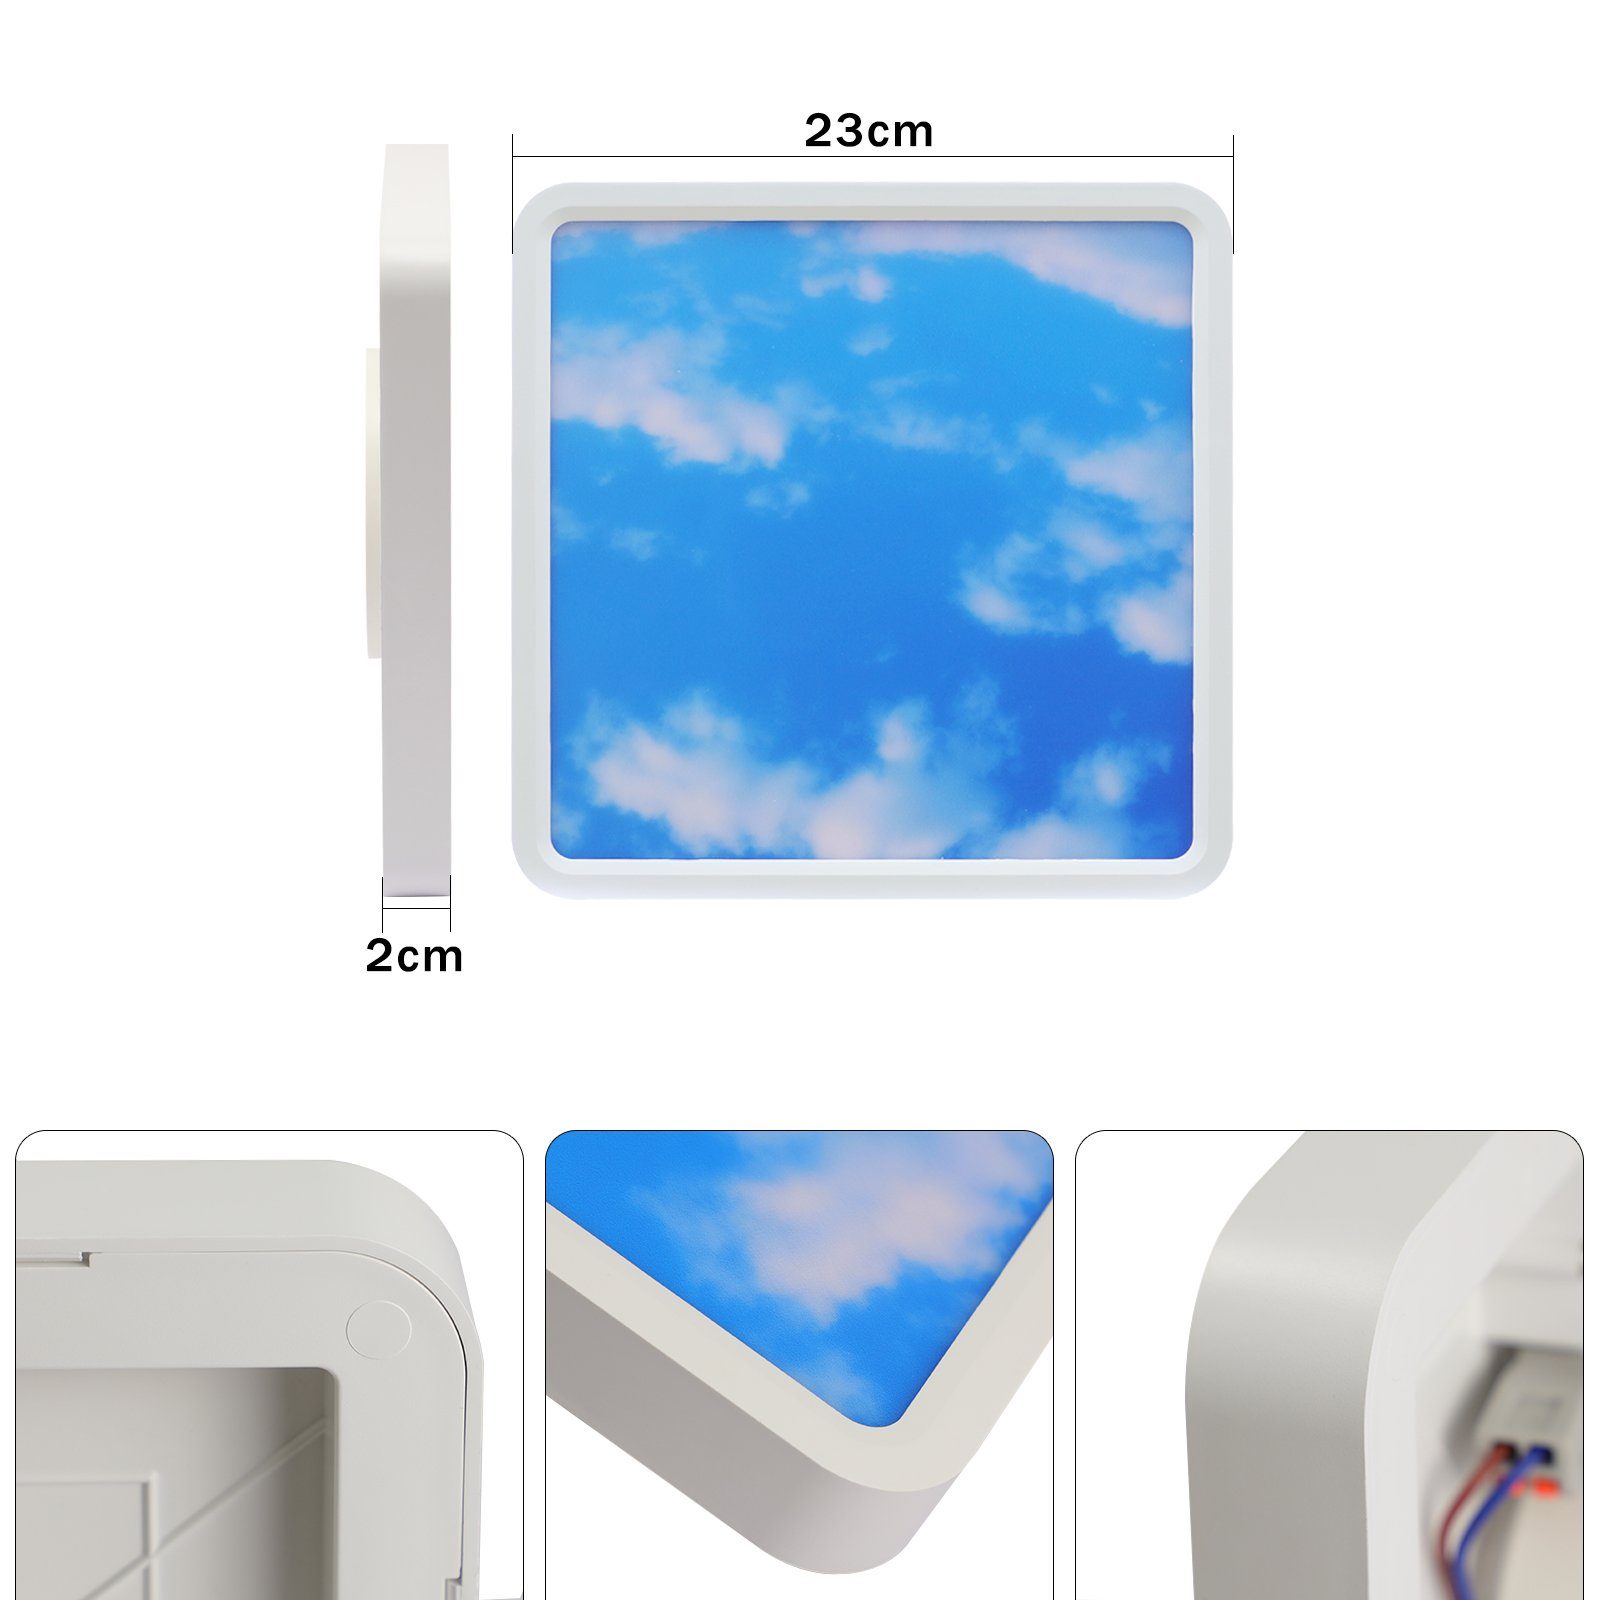 ZMH LED Deckenleuchte Bad - Badezimmer 23cm Design, Dimmbar, LED IP44, Himmel 23W Flach 4000k, Quadratisch integriert, Neutralweiß Nicht fest